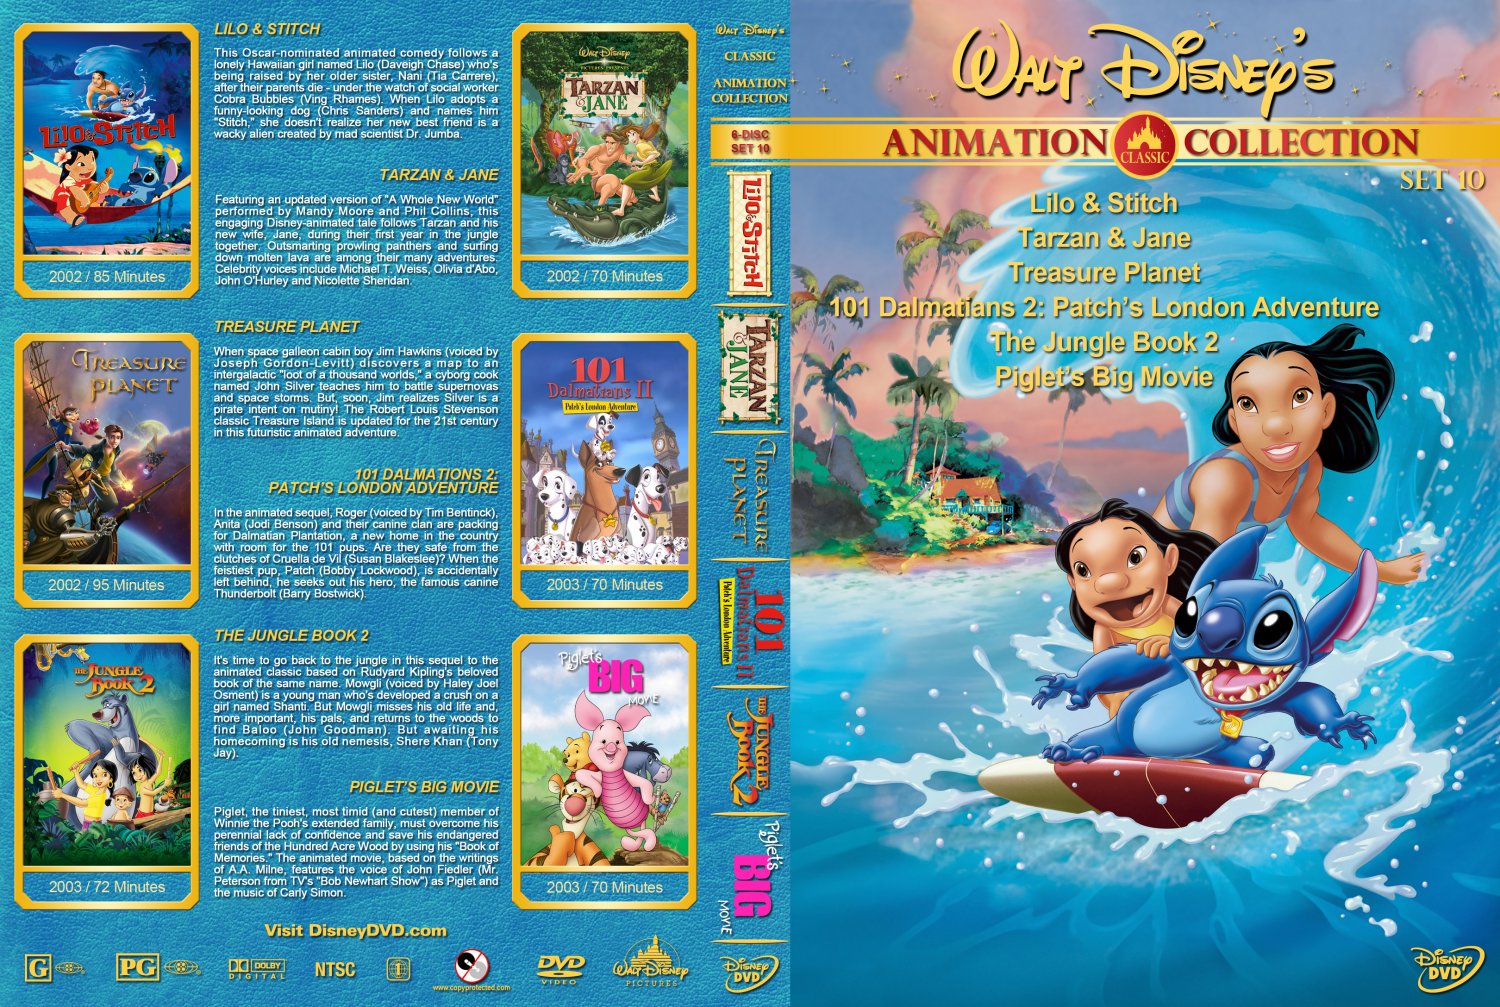 Дисней диск. DVD диск Walt Disney collection. Уолт Дисней мультсериалы диск. Уолт Дисней DVD. Диск сборник мультфильмов Уолта Диснея.